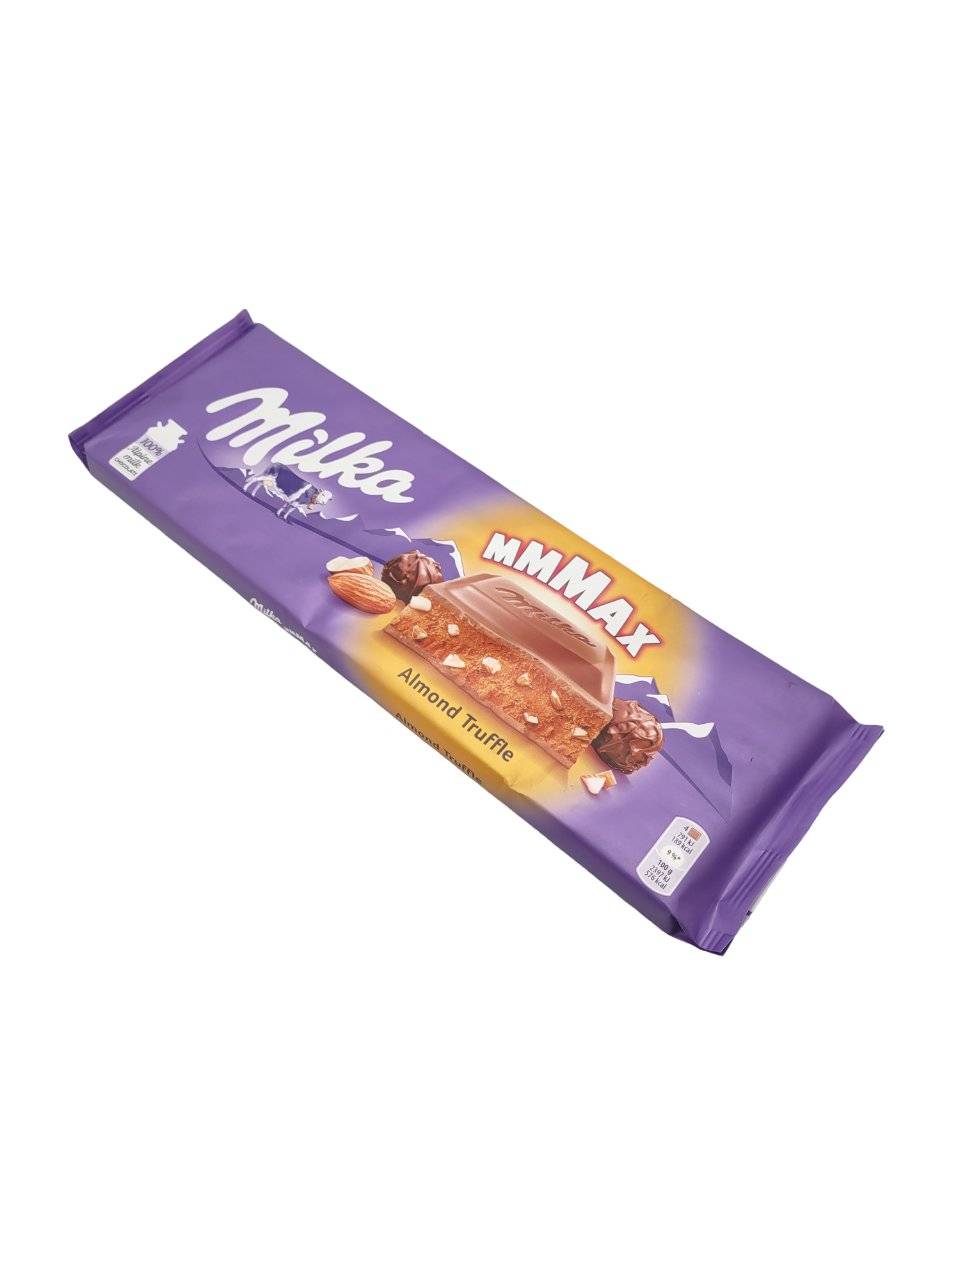 Milka MMMAX Truffle & Almonds - 300g Bar